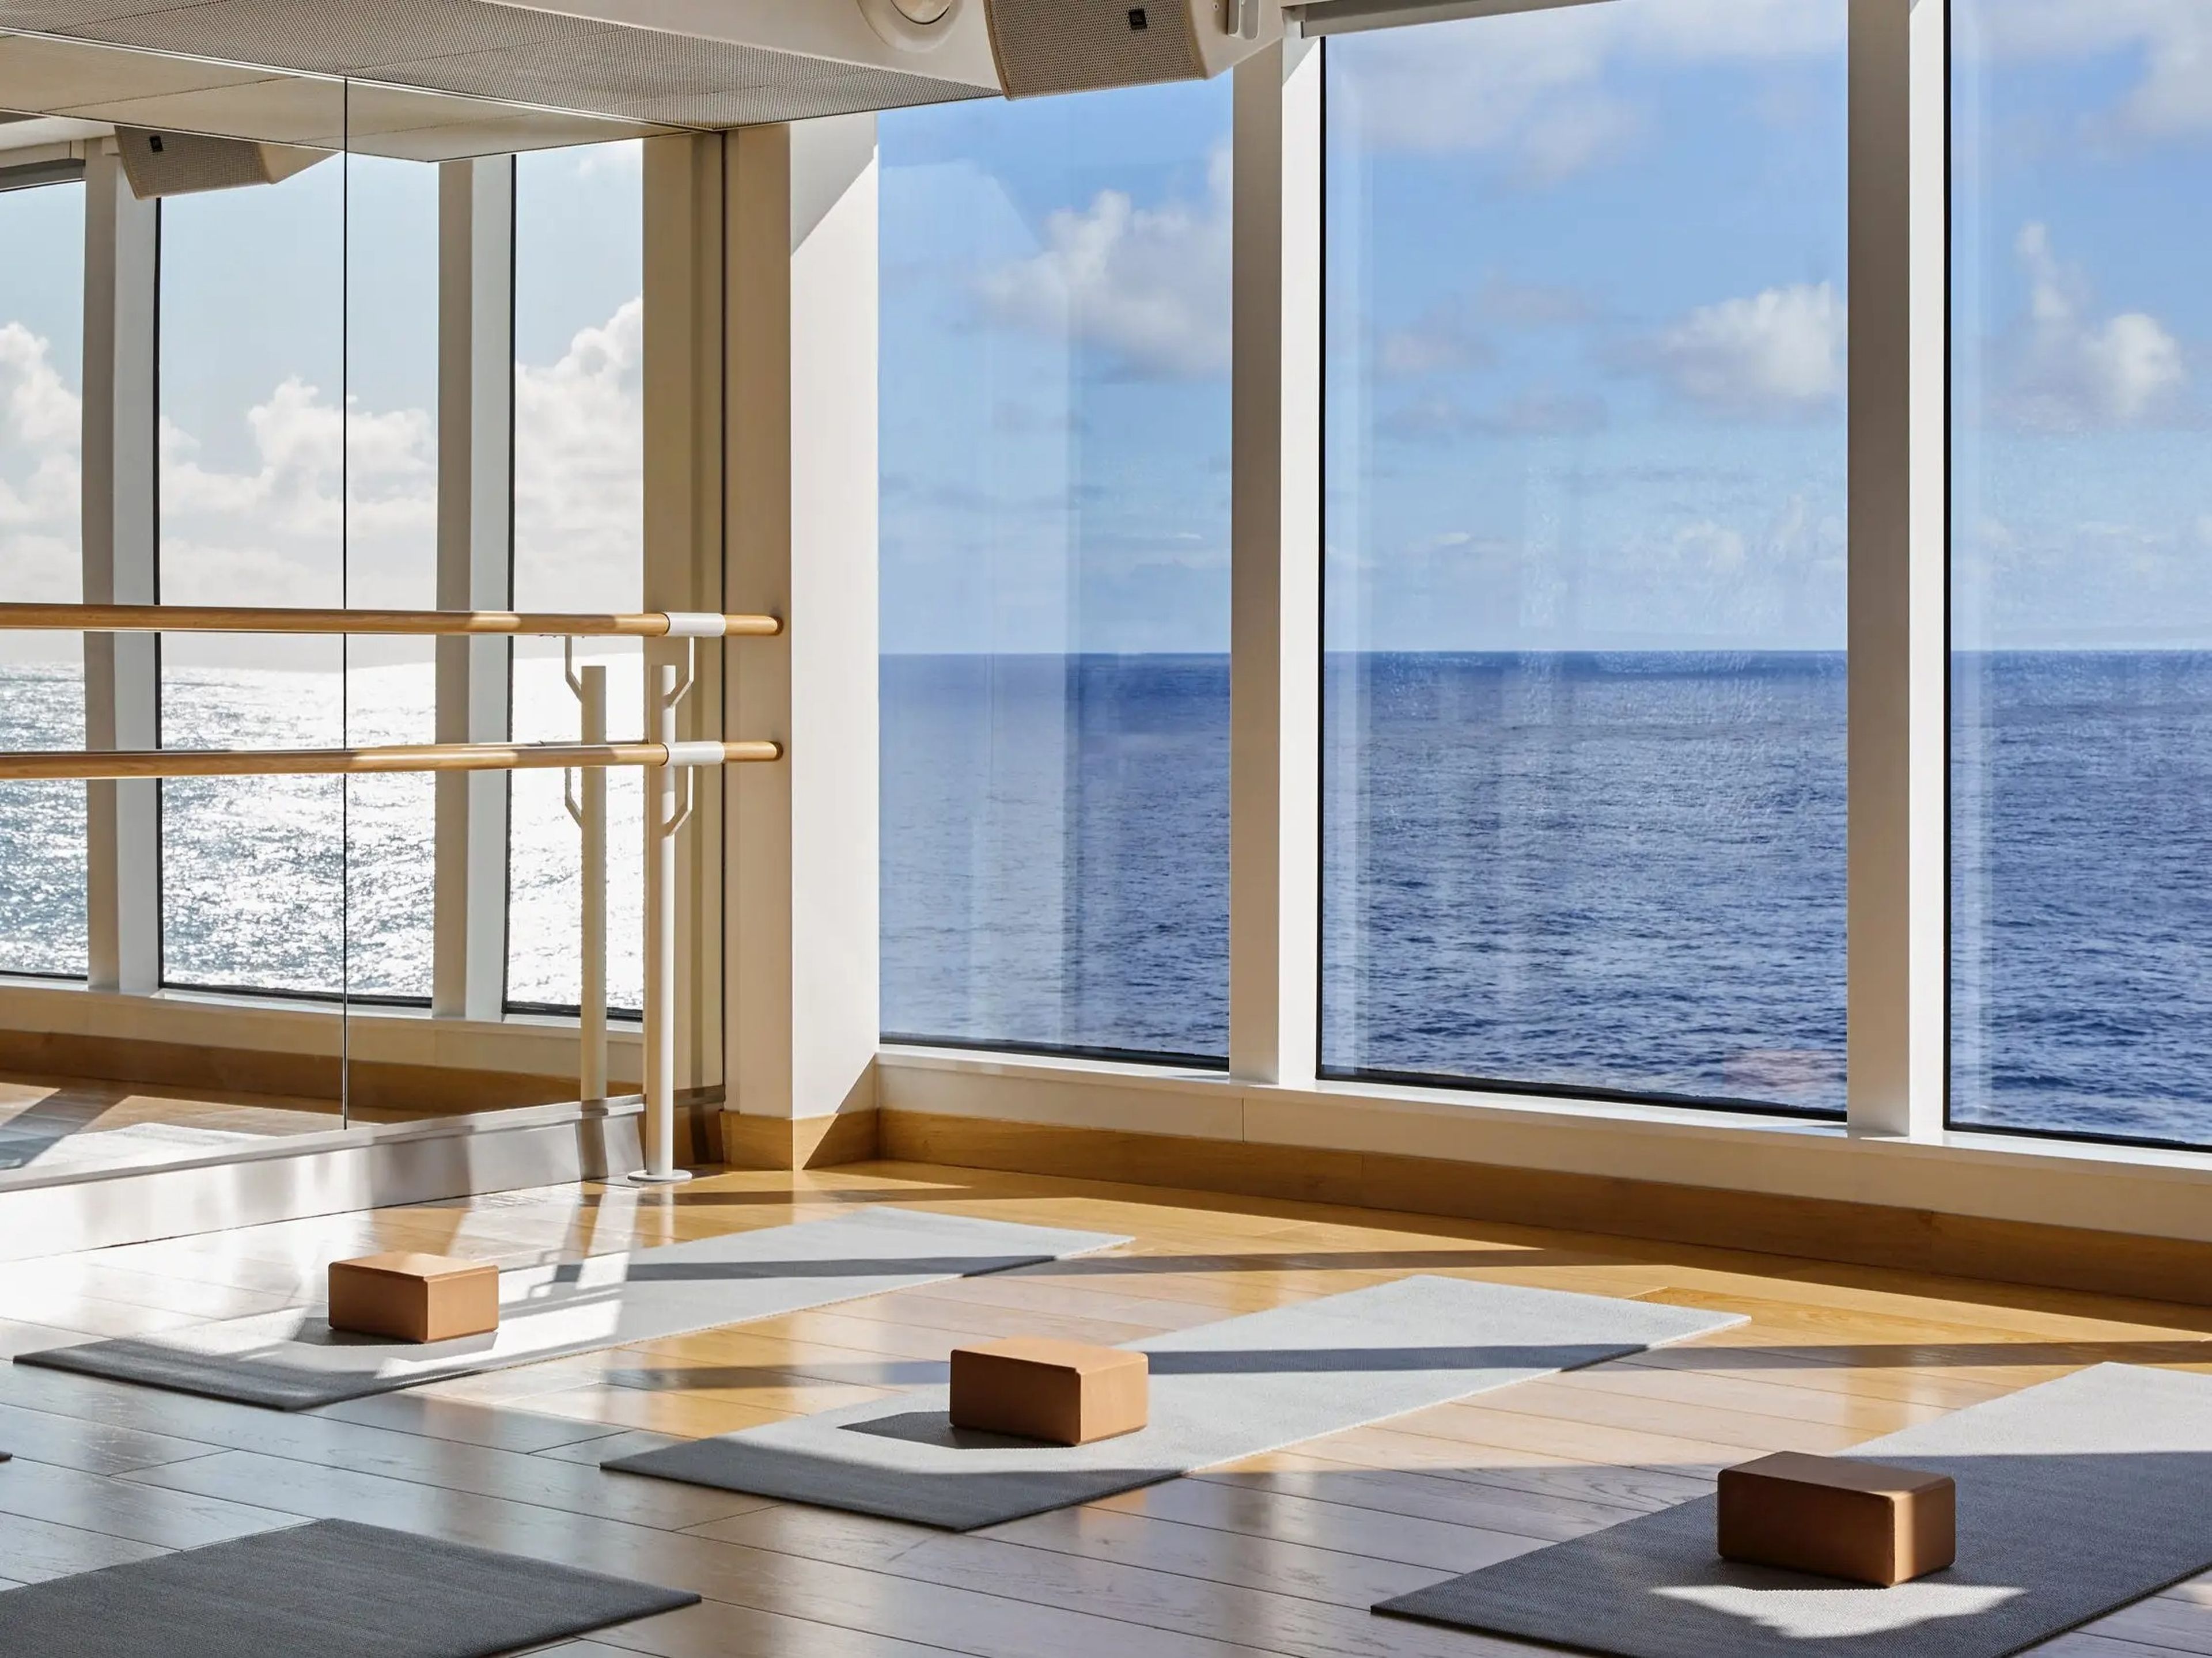 Virgin Voyages hace hincapié en el bienestar a bordo de sus buques con instalaciones como estudios de yoga, una pista al aire libre y spas.